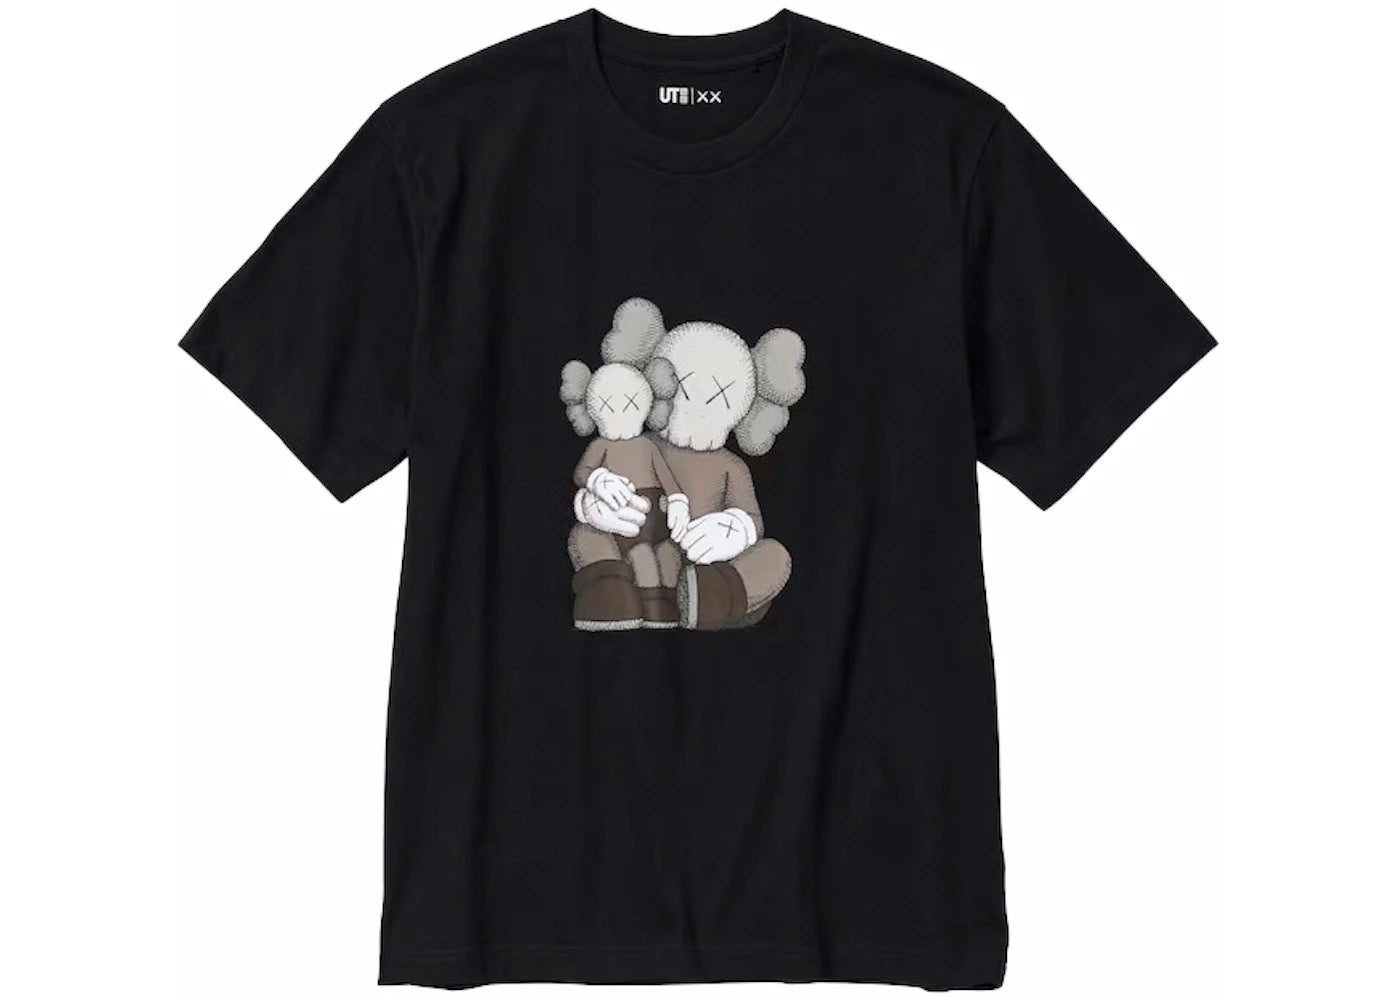 KAWS Graphic T-Shirt Black